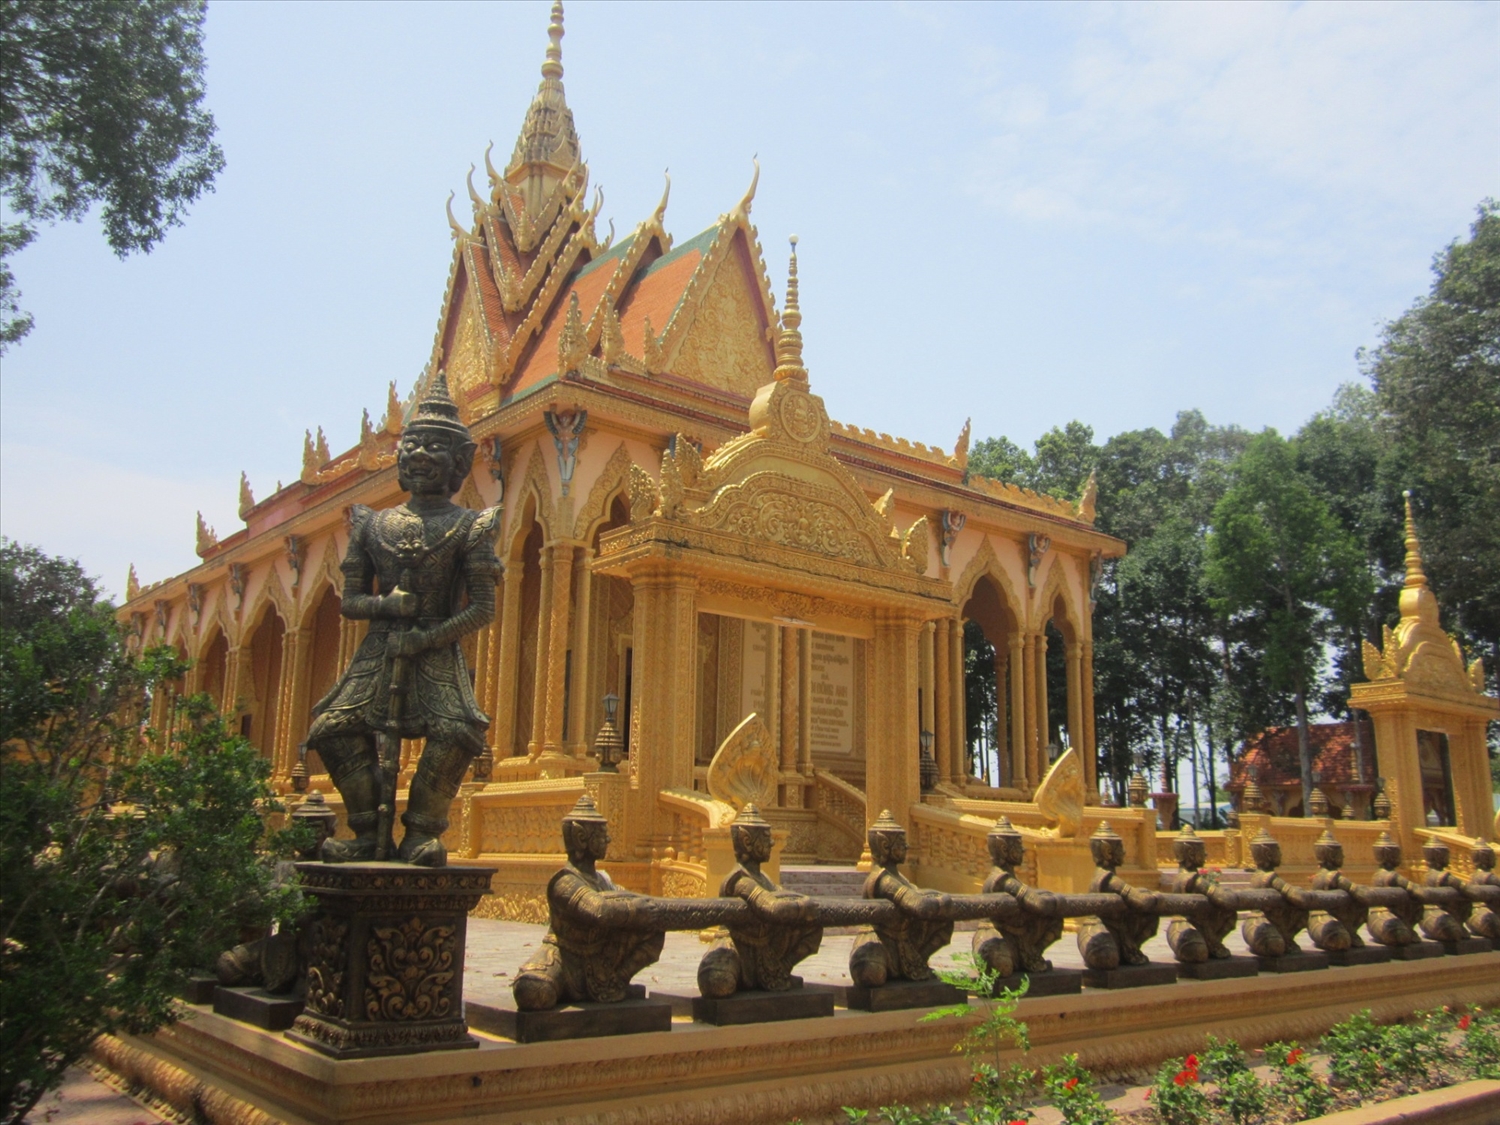 Ngôi chùa Khmer lớn nhất Việt Nam: Chùa Vĩnh Tràng, Mỹ Tho, Tien Giang - ngôi chùa Khmer lớn nhất Việt Nam sở hữu lối kiến trúc vô cùng độc đáo với những bức tượng Phật đa dạng chủng tộc được điêu khắc tinh xảo. Hãy khám phá vẻ đẹp tôn nghiêm và thiêng liêng của nơi đây.